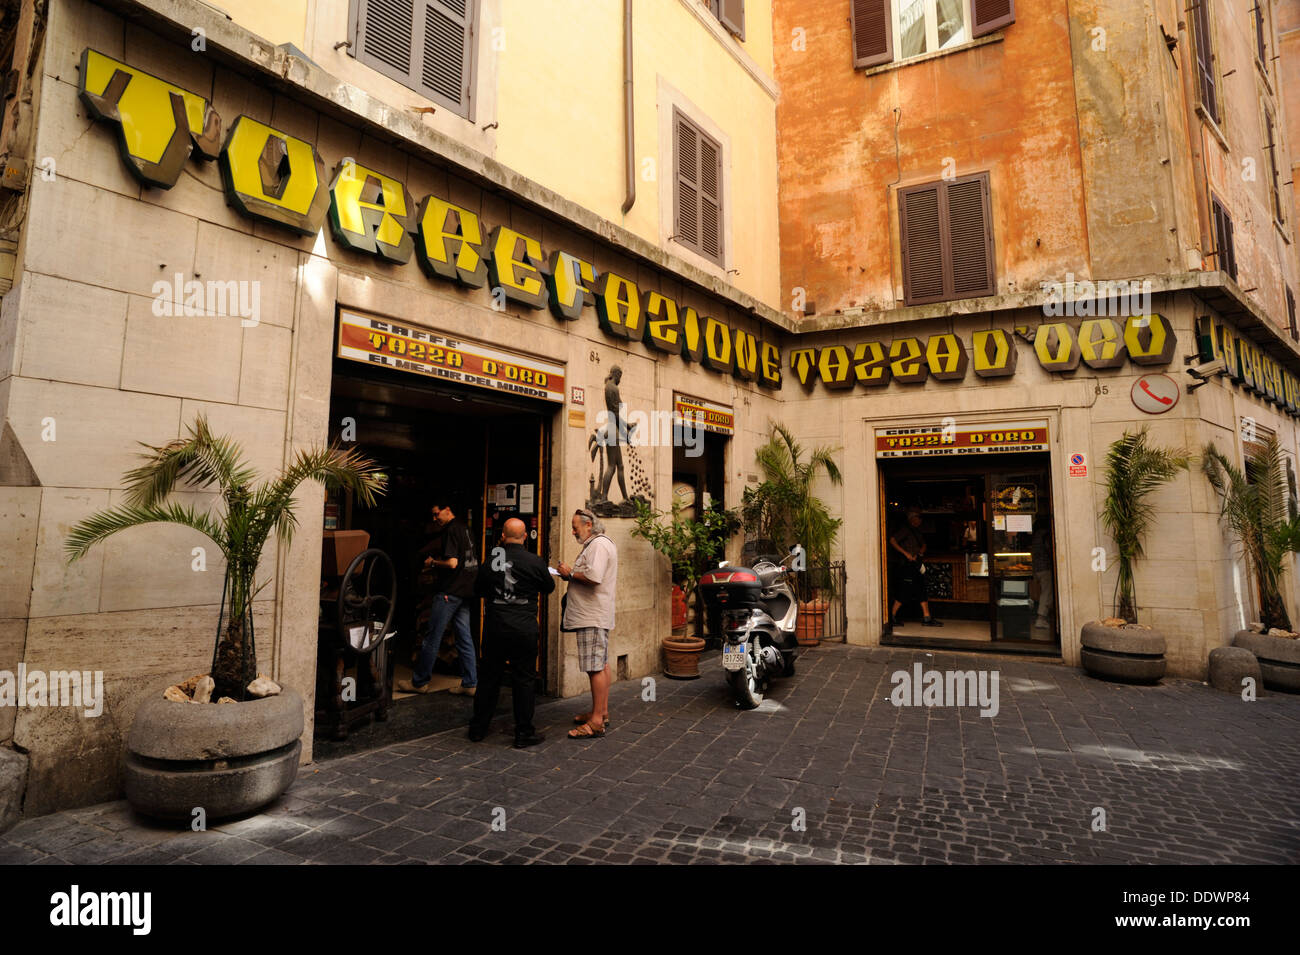 Italia, Roma, caffè tazza d'oro Fotografía de stock - Alamy